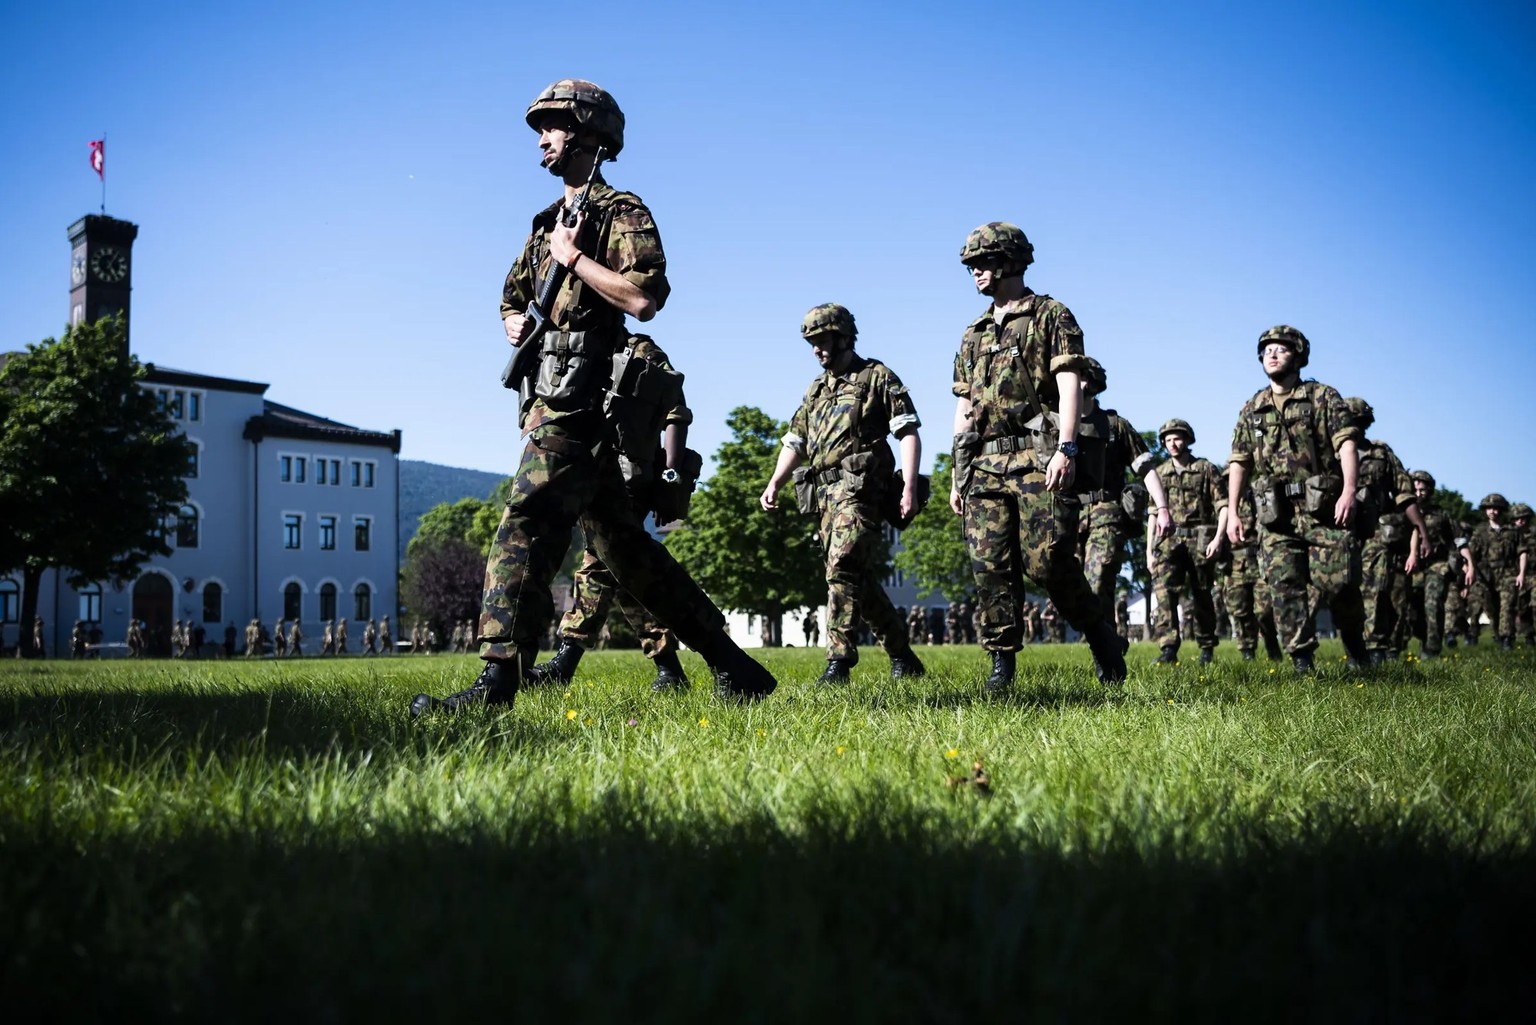 Soldaten des Spitalbataillons 2 der Schweizer Armee nehmen an einer Zeremonie teil.